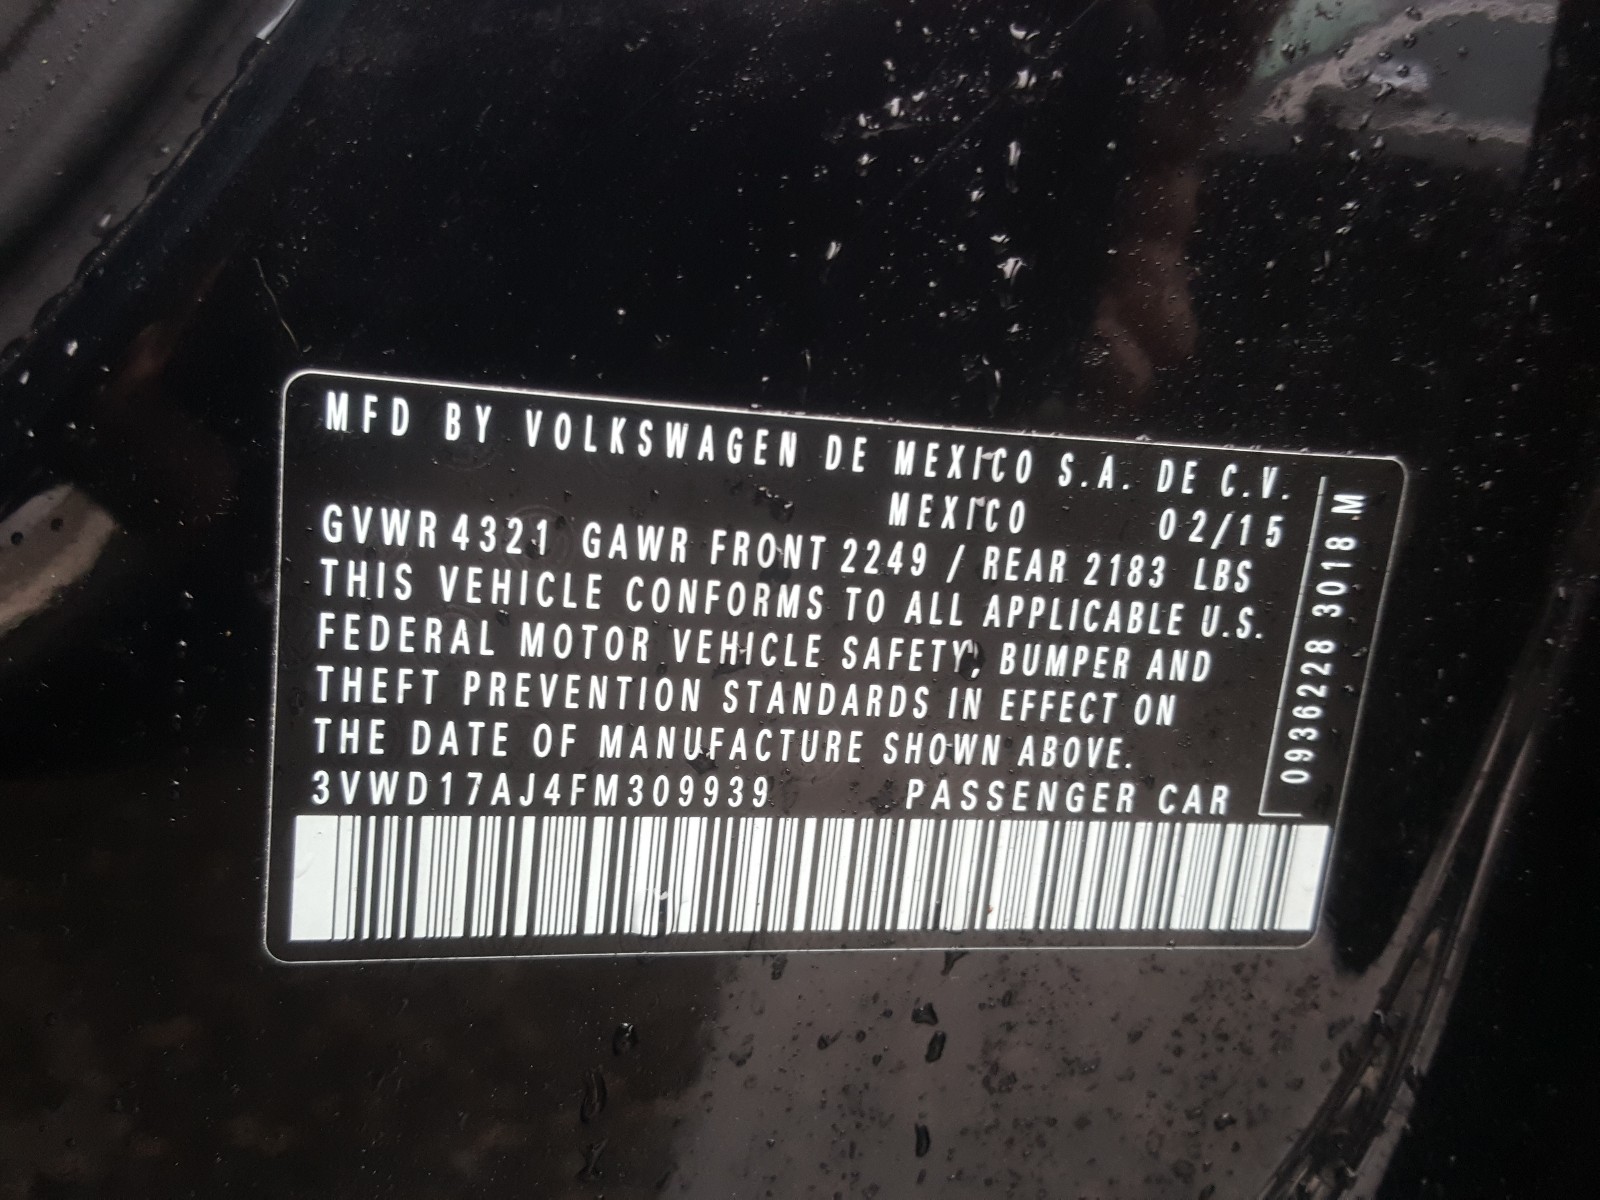 Volkswagen Jetta SE 2015 VIN 3VWD17AJ4FM309939